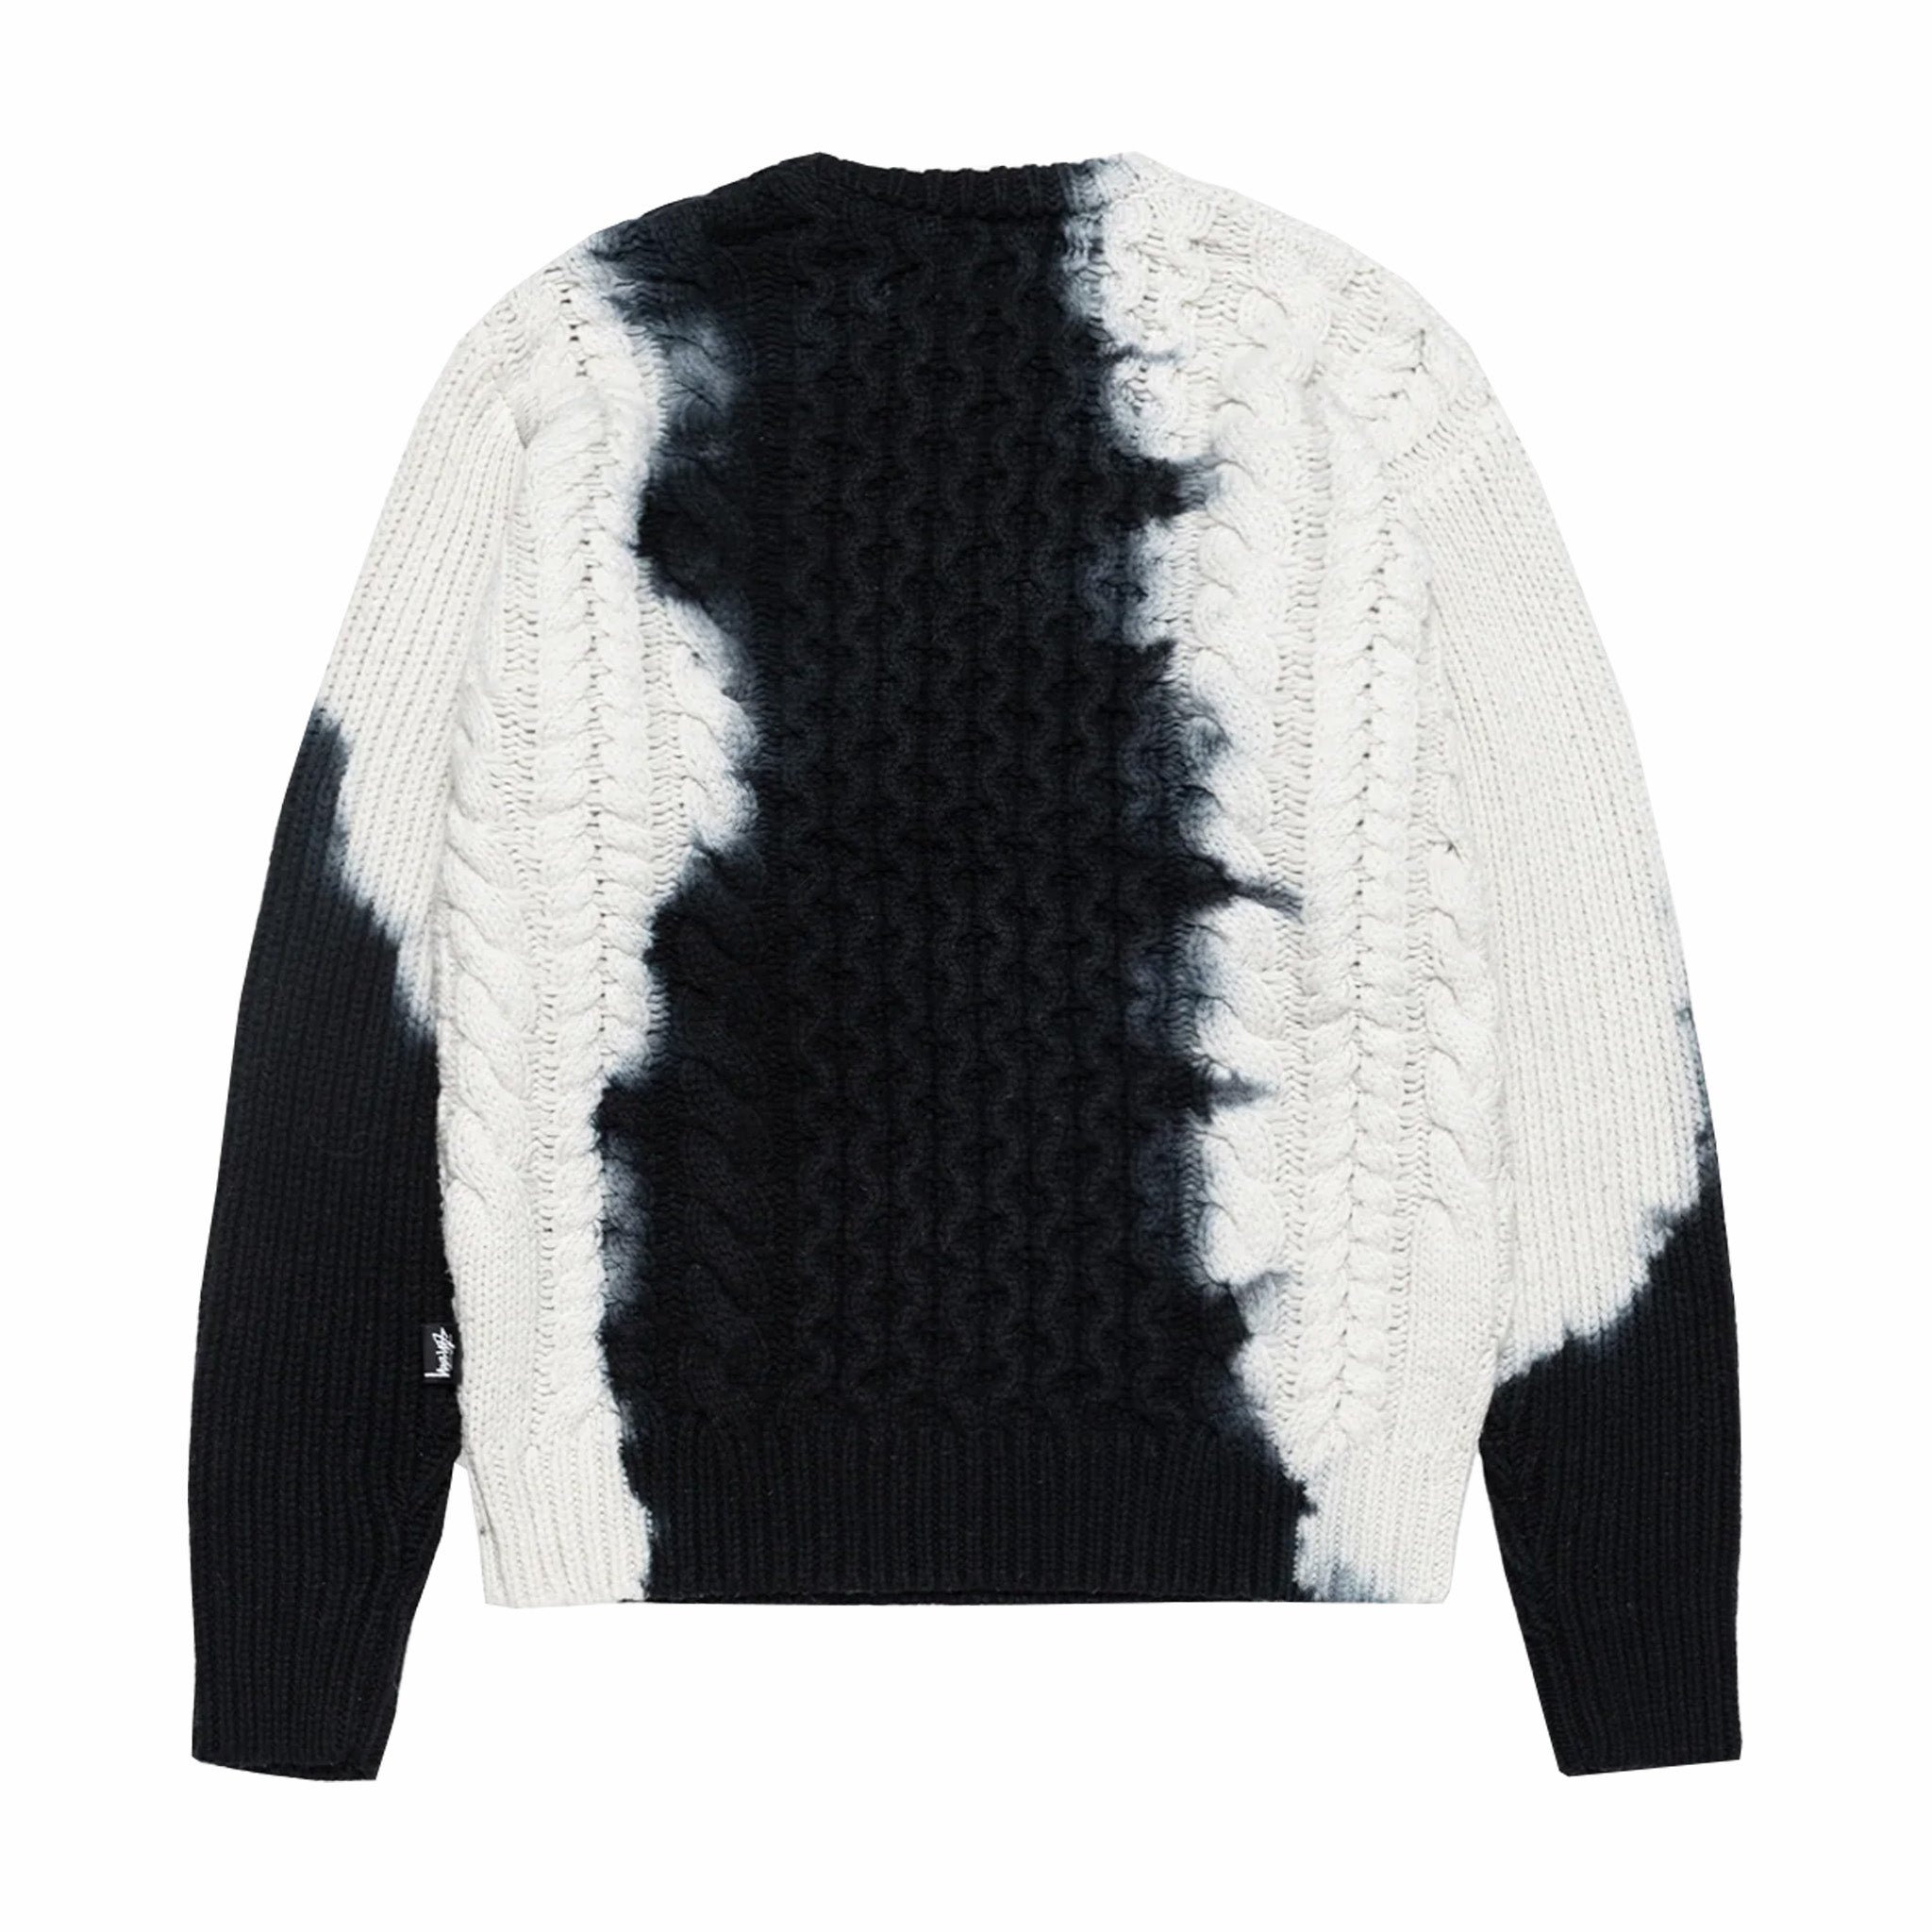 Stüssy Tie Dye Fisherman Sweater (Black) - August Shop